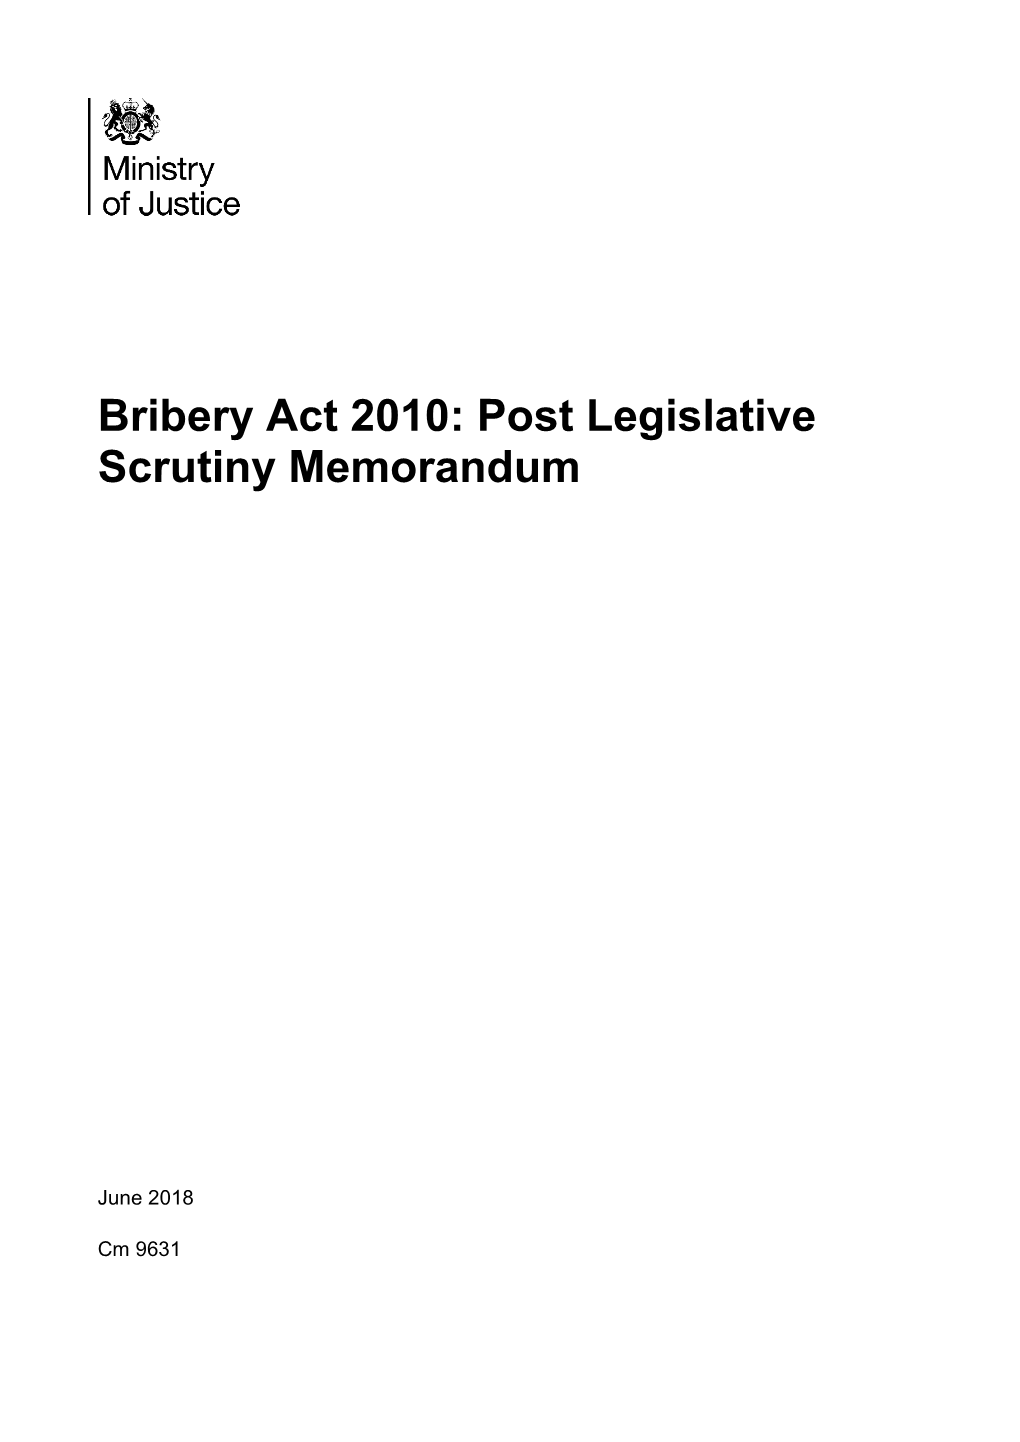 Bribery Act 2010: Post Legislative Scrutiny Memorandum